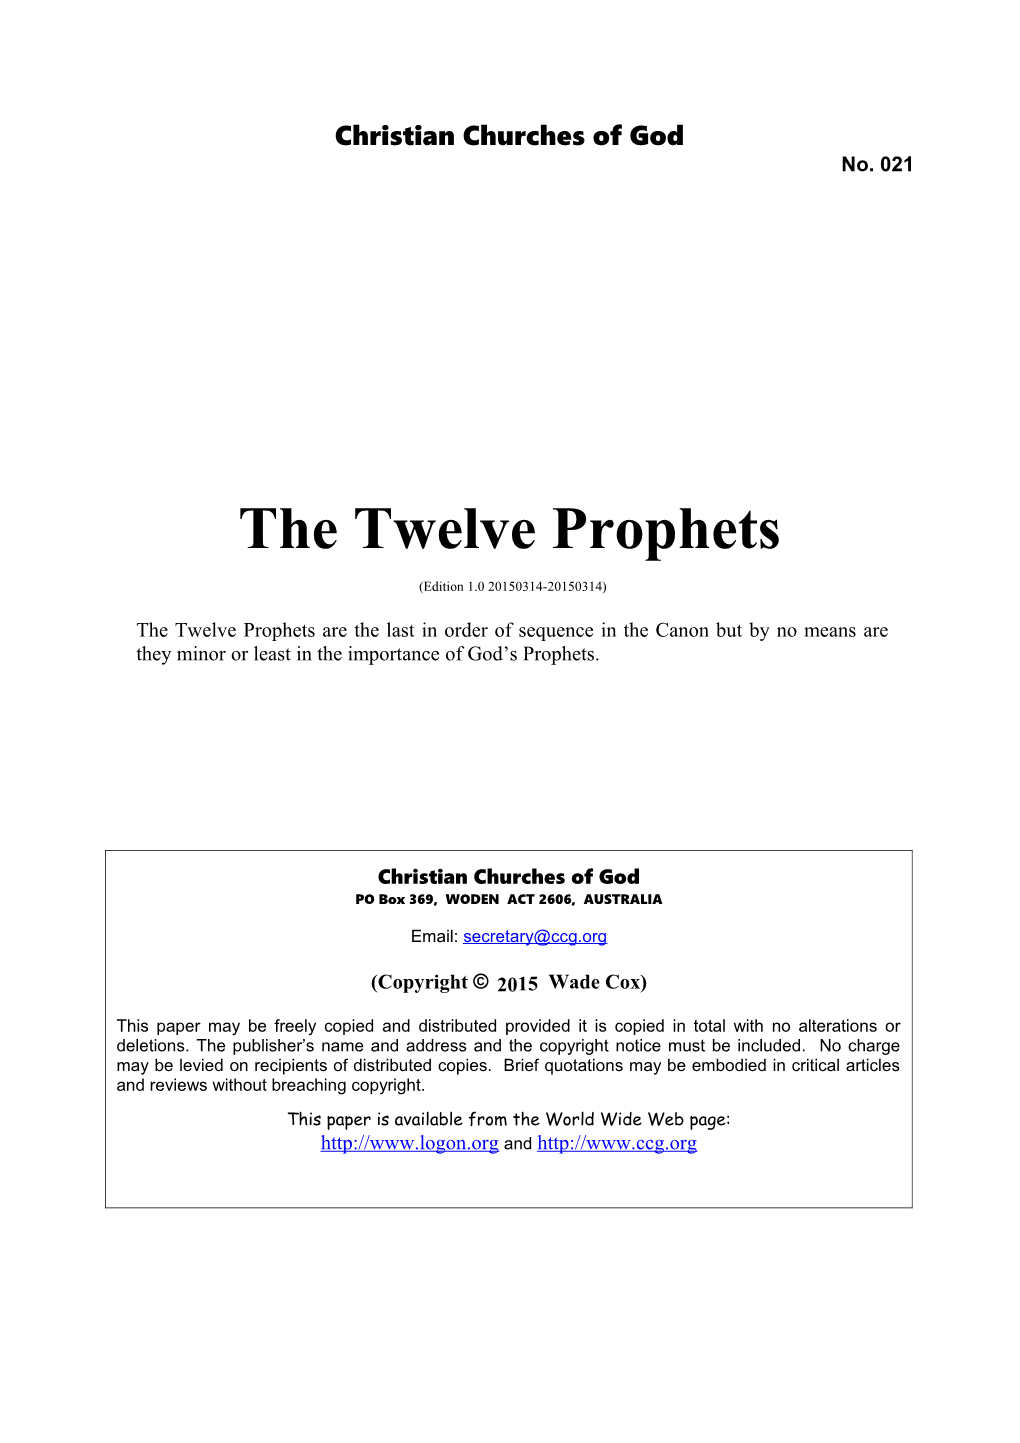 The Twelve Prophets (No. 021)